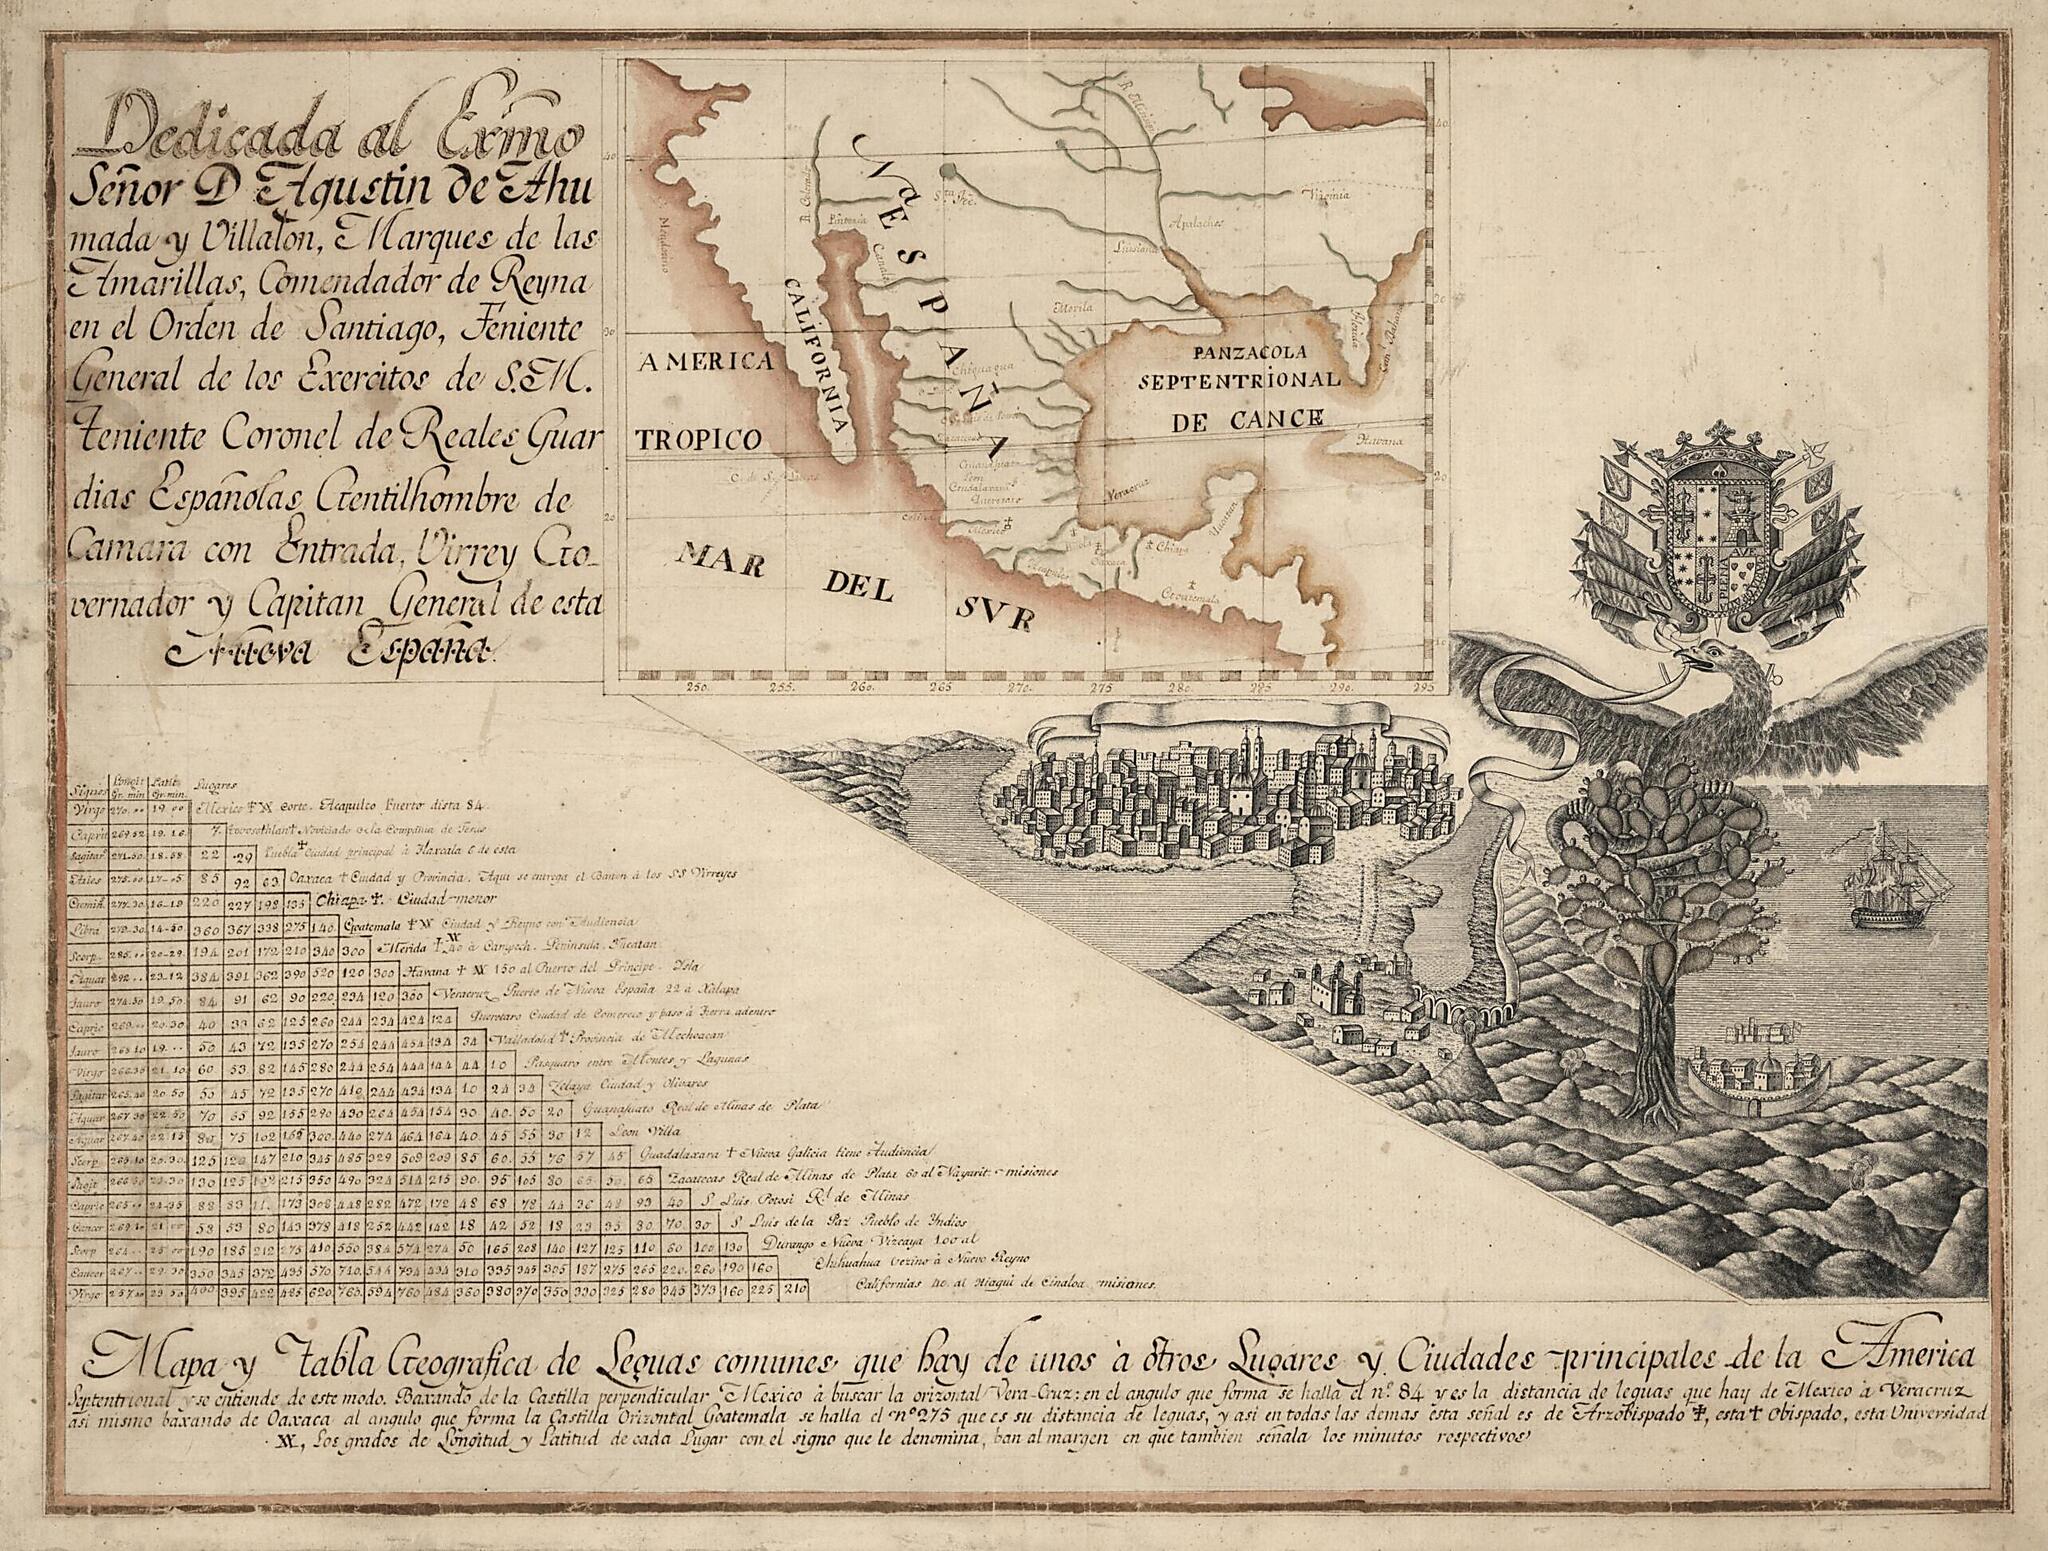 This old map of Mapa Y Tabla Geografica De Leguas Comunes Que Hay De Unos á Otros Lugares Y Ciudades Principales De La America Septentrional  from 1750 was created by Agustín De Ahumada Y Villalón in 1750